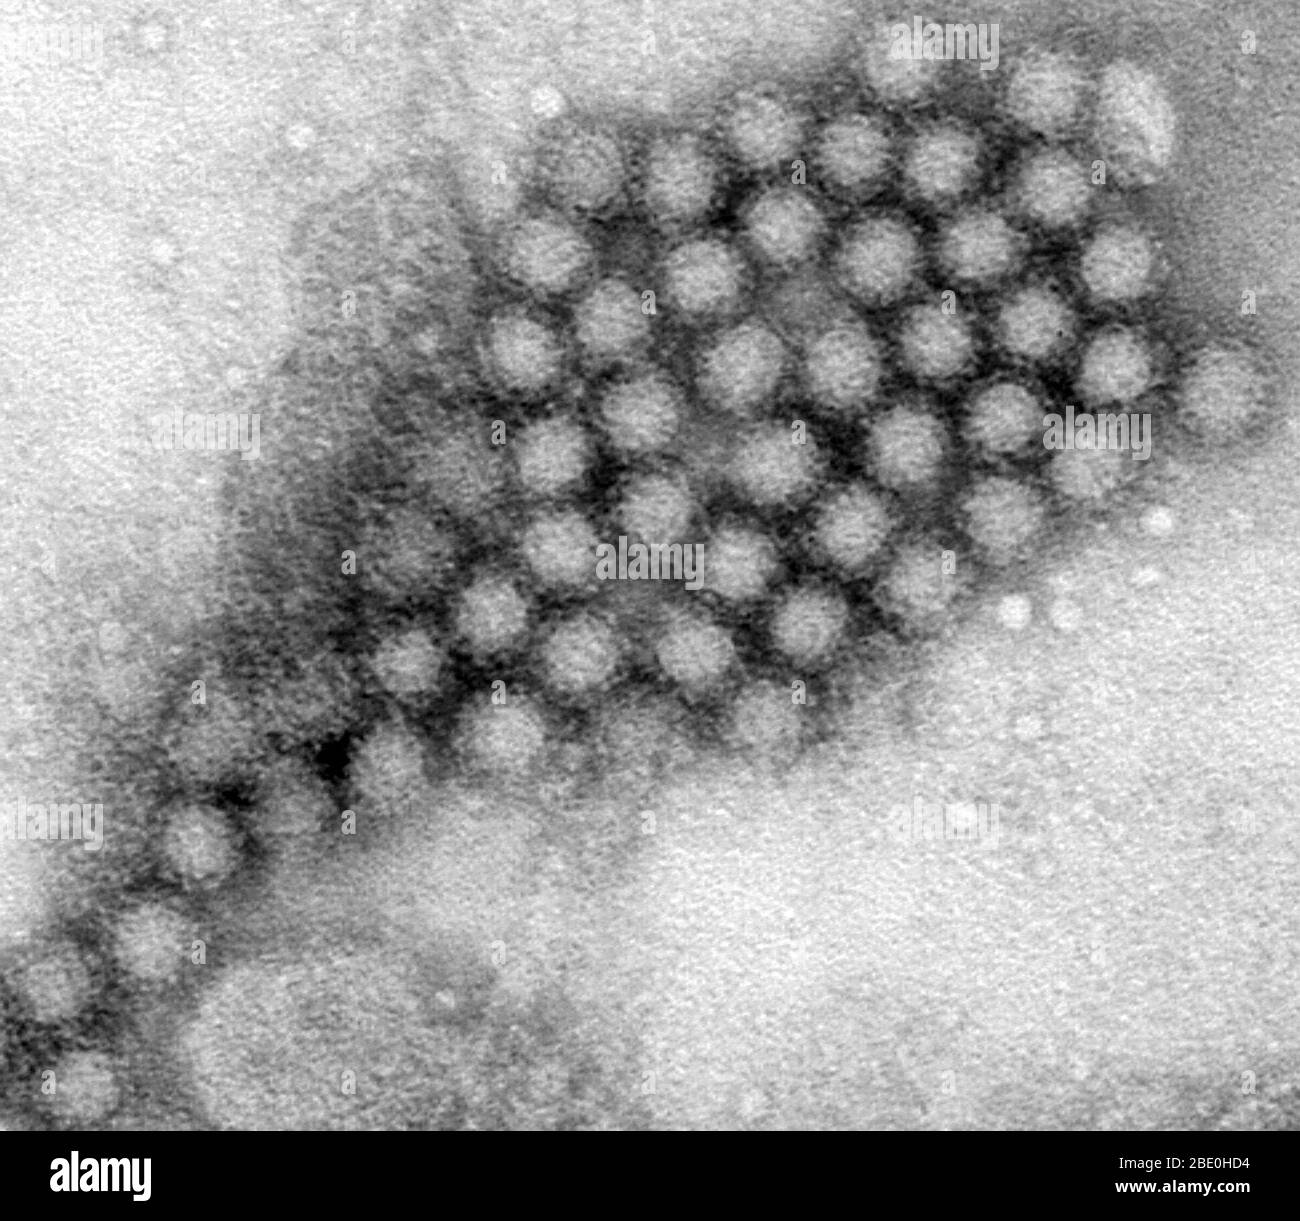 Dieser Transmissionselektronenmikrograph (TEM) zeigte einige der ultrastrukturellen Morphologie, die von Norovirus-Virionen oder Viruspartikeln dargestellt wurde. Noroviren gehören zur Gattung Norovirus und zur Familie Caliciviridae. Sie sind eine Gruppe von verwandten, einsträngigen RNA, unbehüllten Viren, die akute Gastroenteritis beim Menschen verursachen. Norovirus wurde kürzlich als offizieller Genus-Name für die Gruppe der Viren zugelassen, die vorläufig als Norwalk-like Virus (NLV) beschrieben werden. Stockfoto